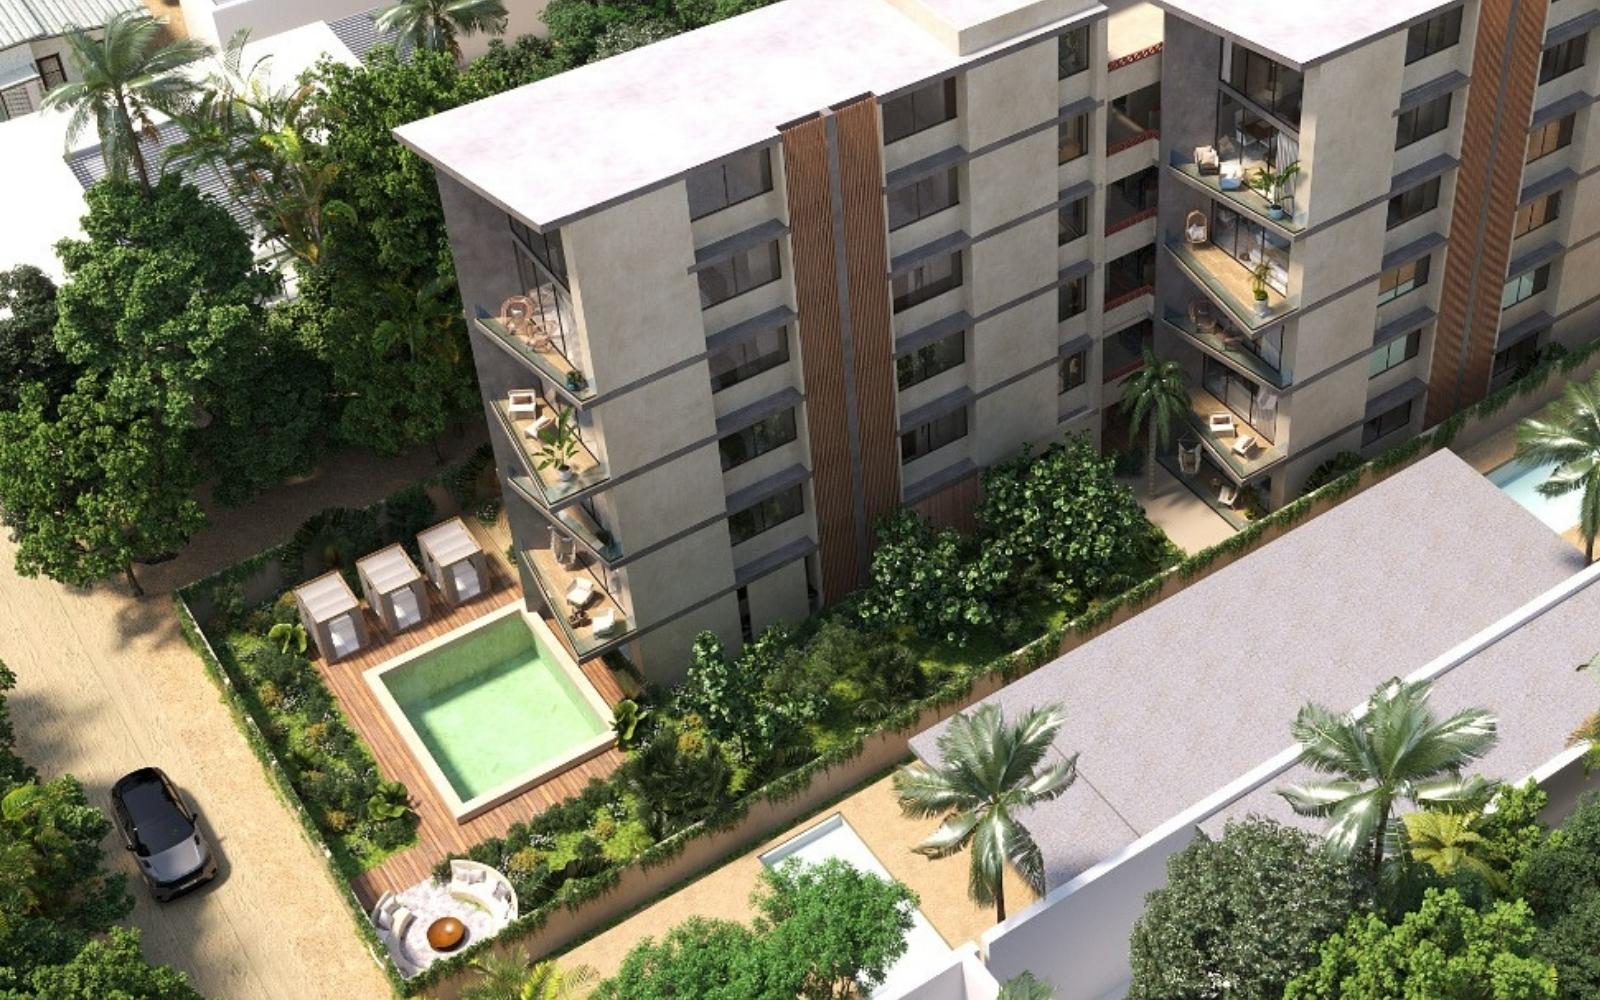 Condominio con terraza, Gimnasio, Alberca, Lounge Bar y Spa, Zona Norte, Merida.